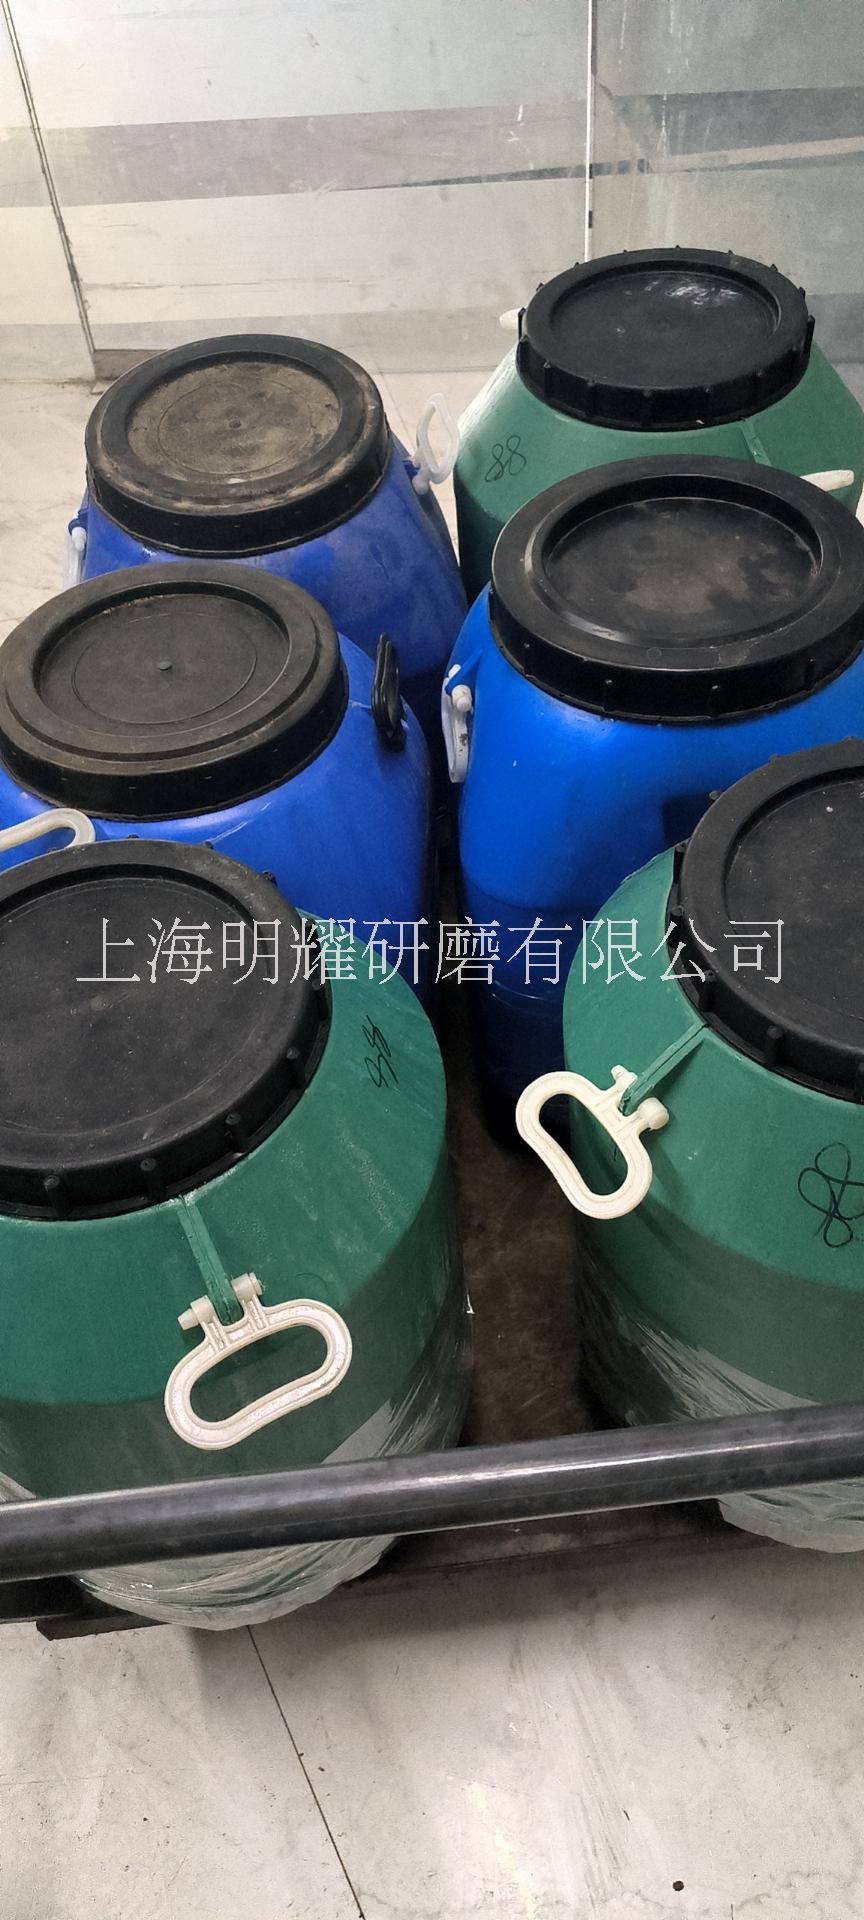 上海明耀研磨液工厂光亮剂批发 上海明耀研磨液工厂供应光亮剂批发图片